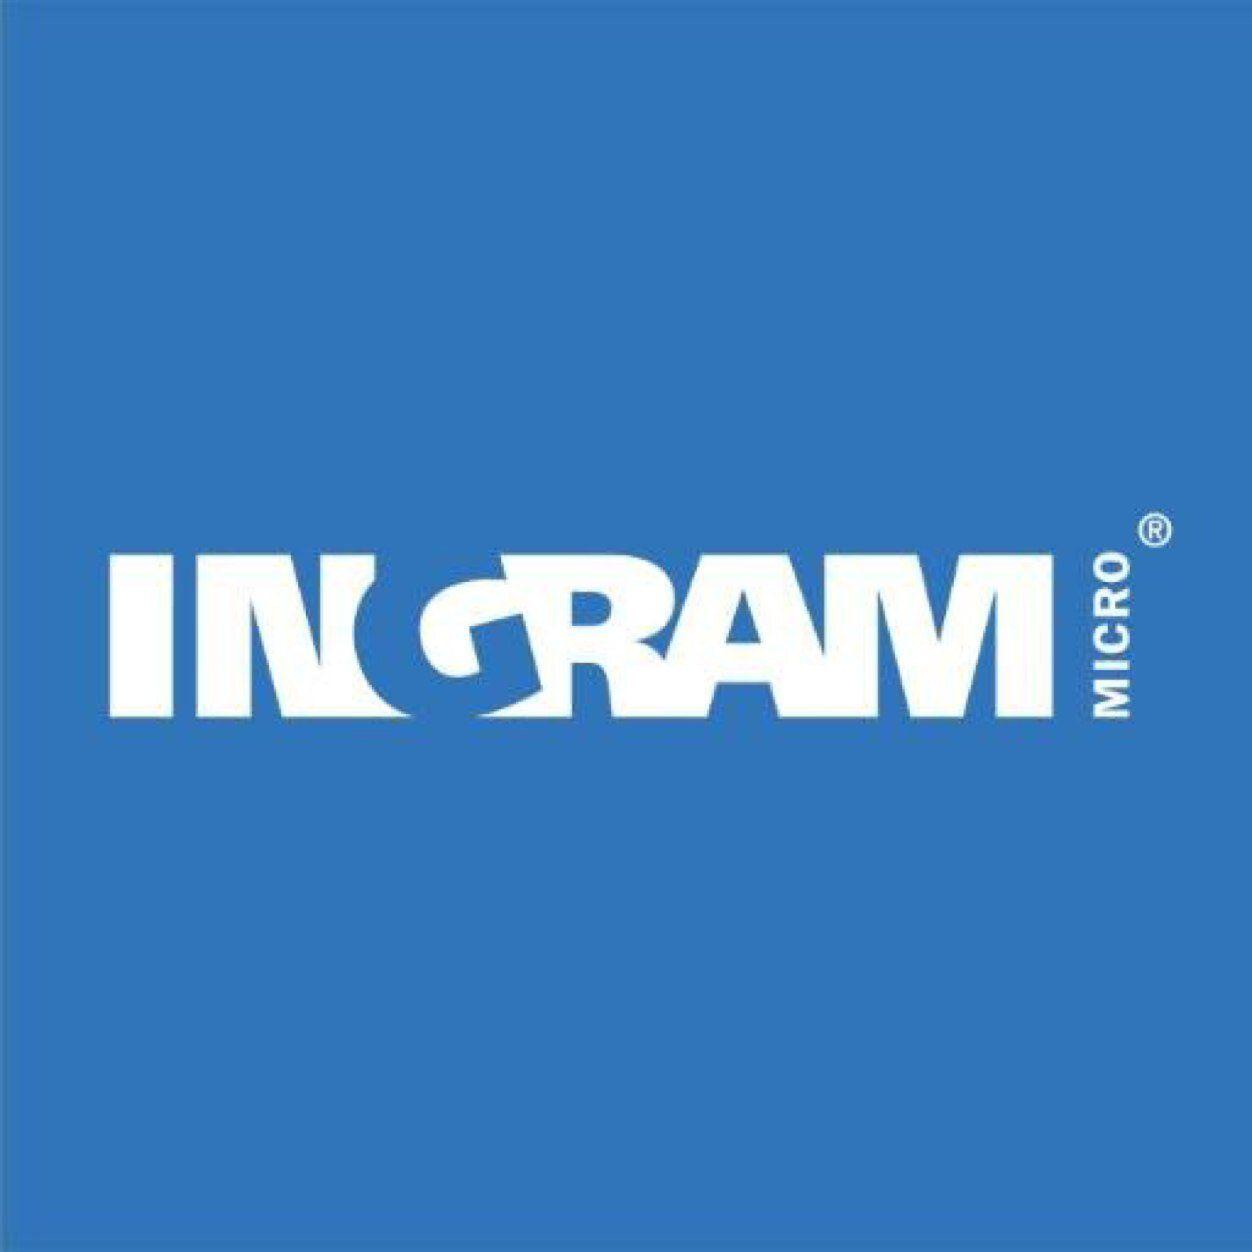 Ingram Logo - Ingram micro Logos